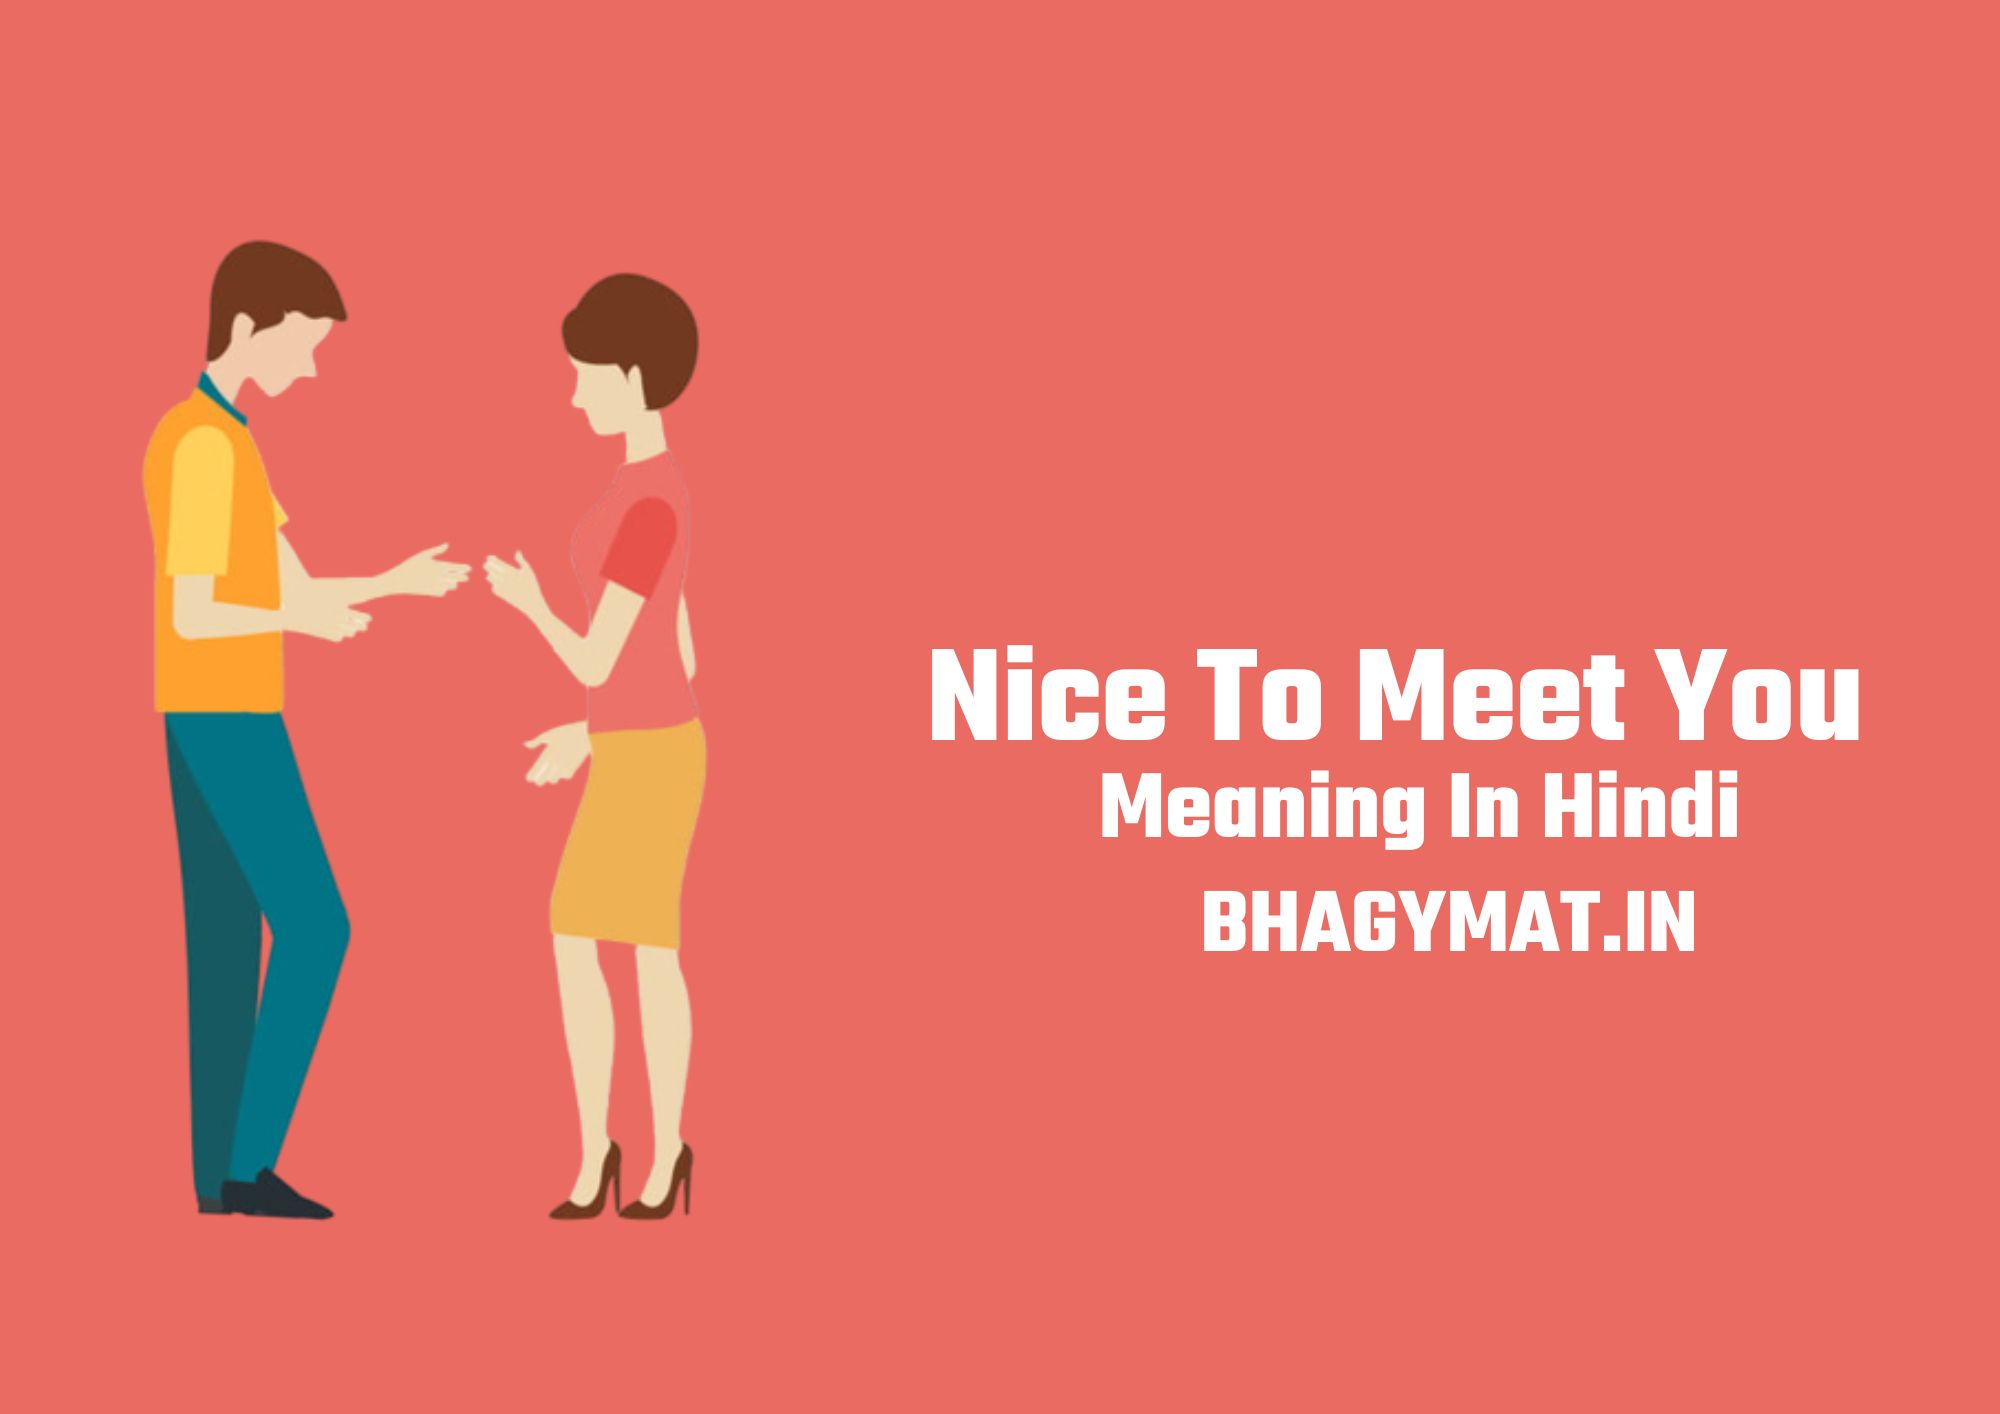 नाइस टू मीट यू का मतलब क्या होता है (Nice To Meet You Ka Matlab Kya Hota Hai) - Nice To Meet You Meaning In Hindi